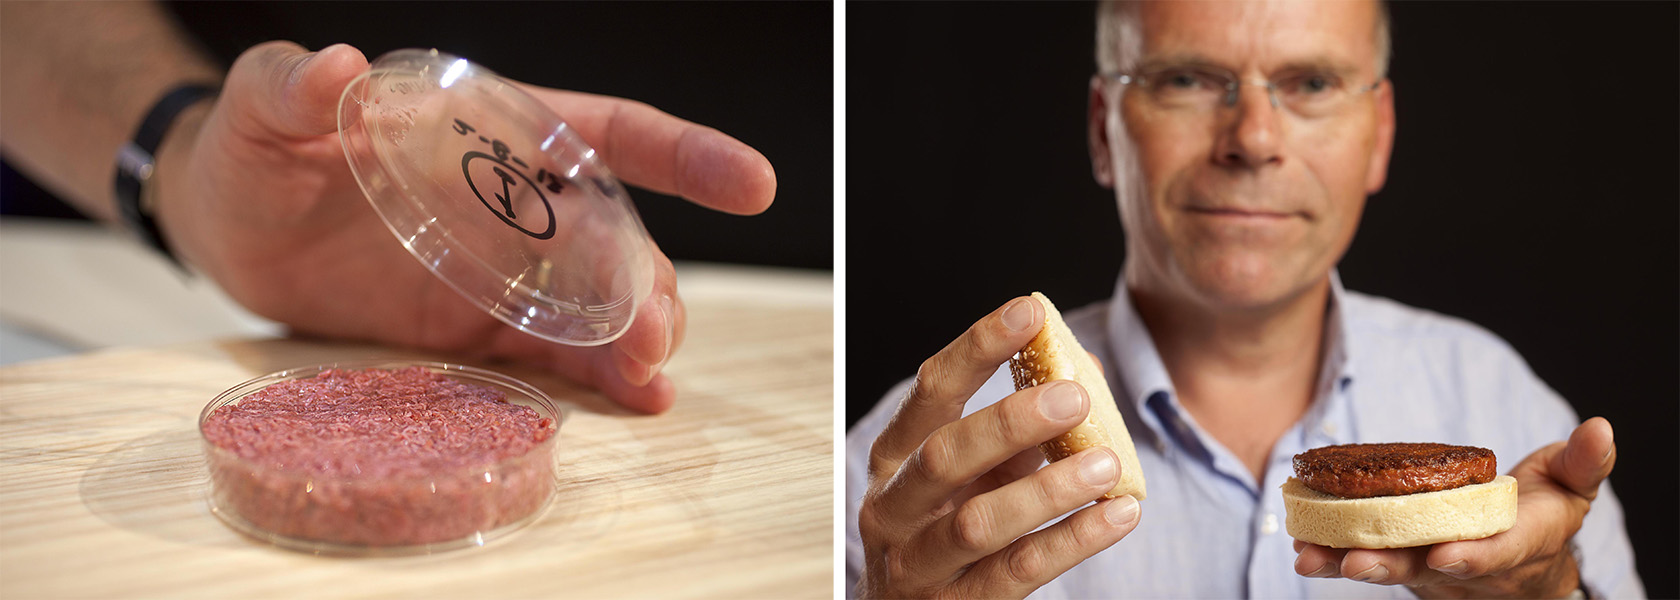 La foto de la izquierda muestra una hamburguesa de carne molida cruda en una placa de Petri; la foto de la derecha muestra una hamburguesa cocida en un pan, con la cara sonriente de un hombre en el fondo.